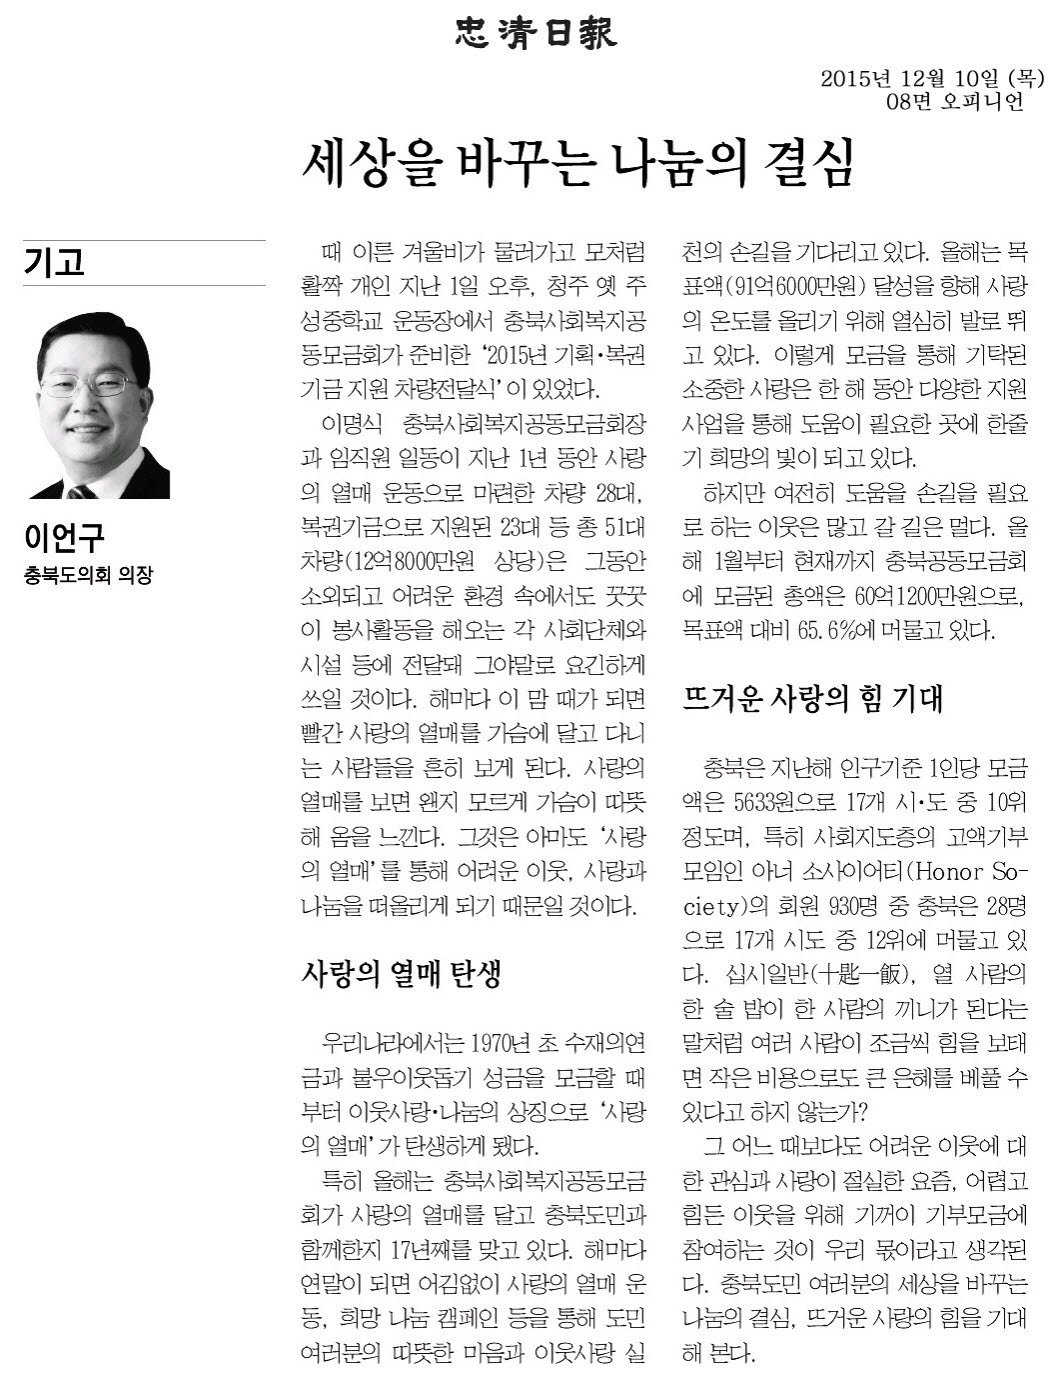 세상을 바꾸는 나눔의 결실-이언구의장 기고(충청일보 2015년12월10일) - 1